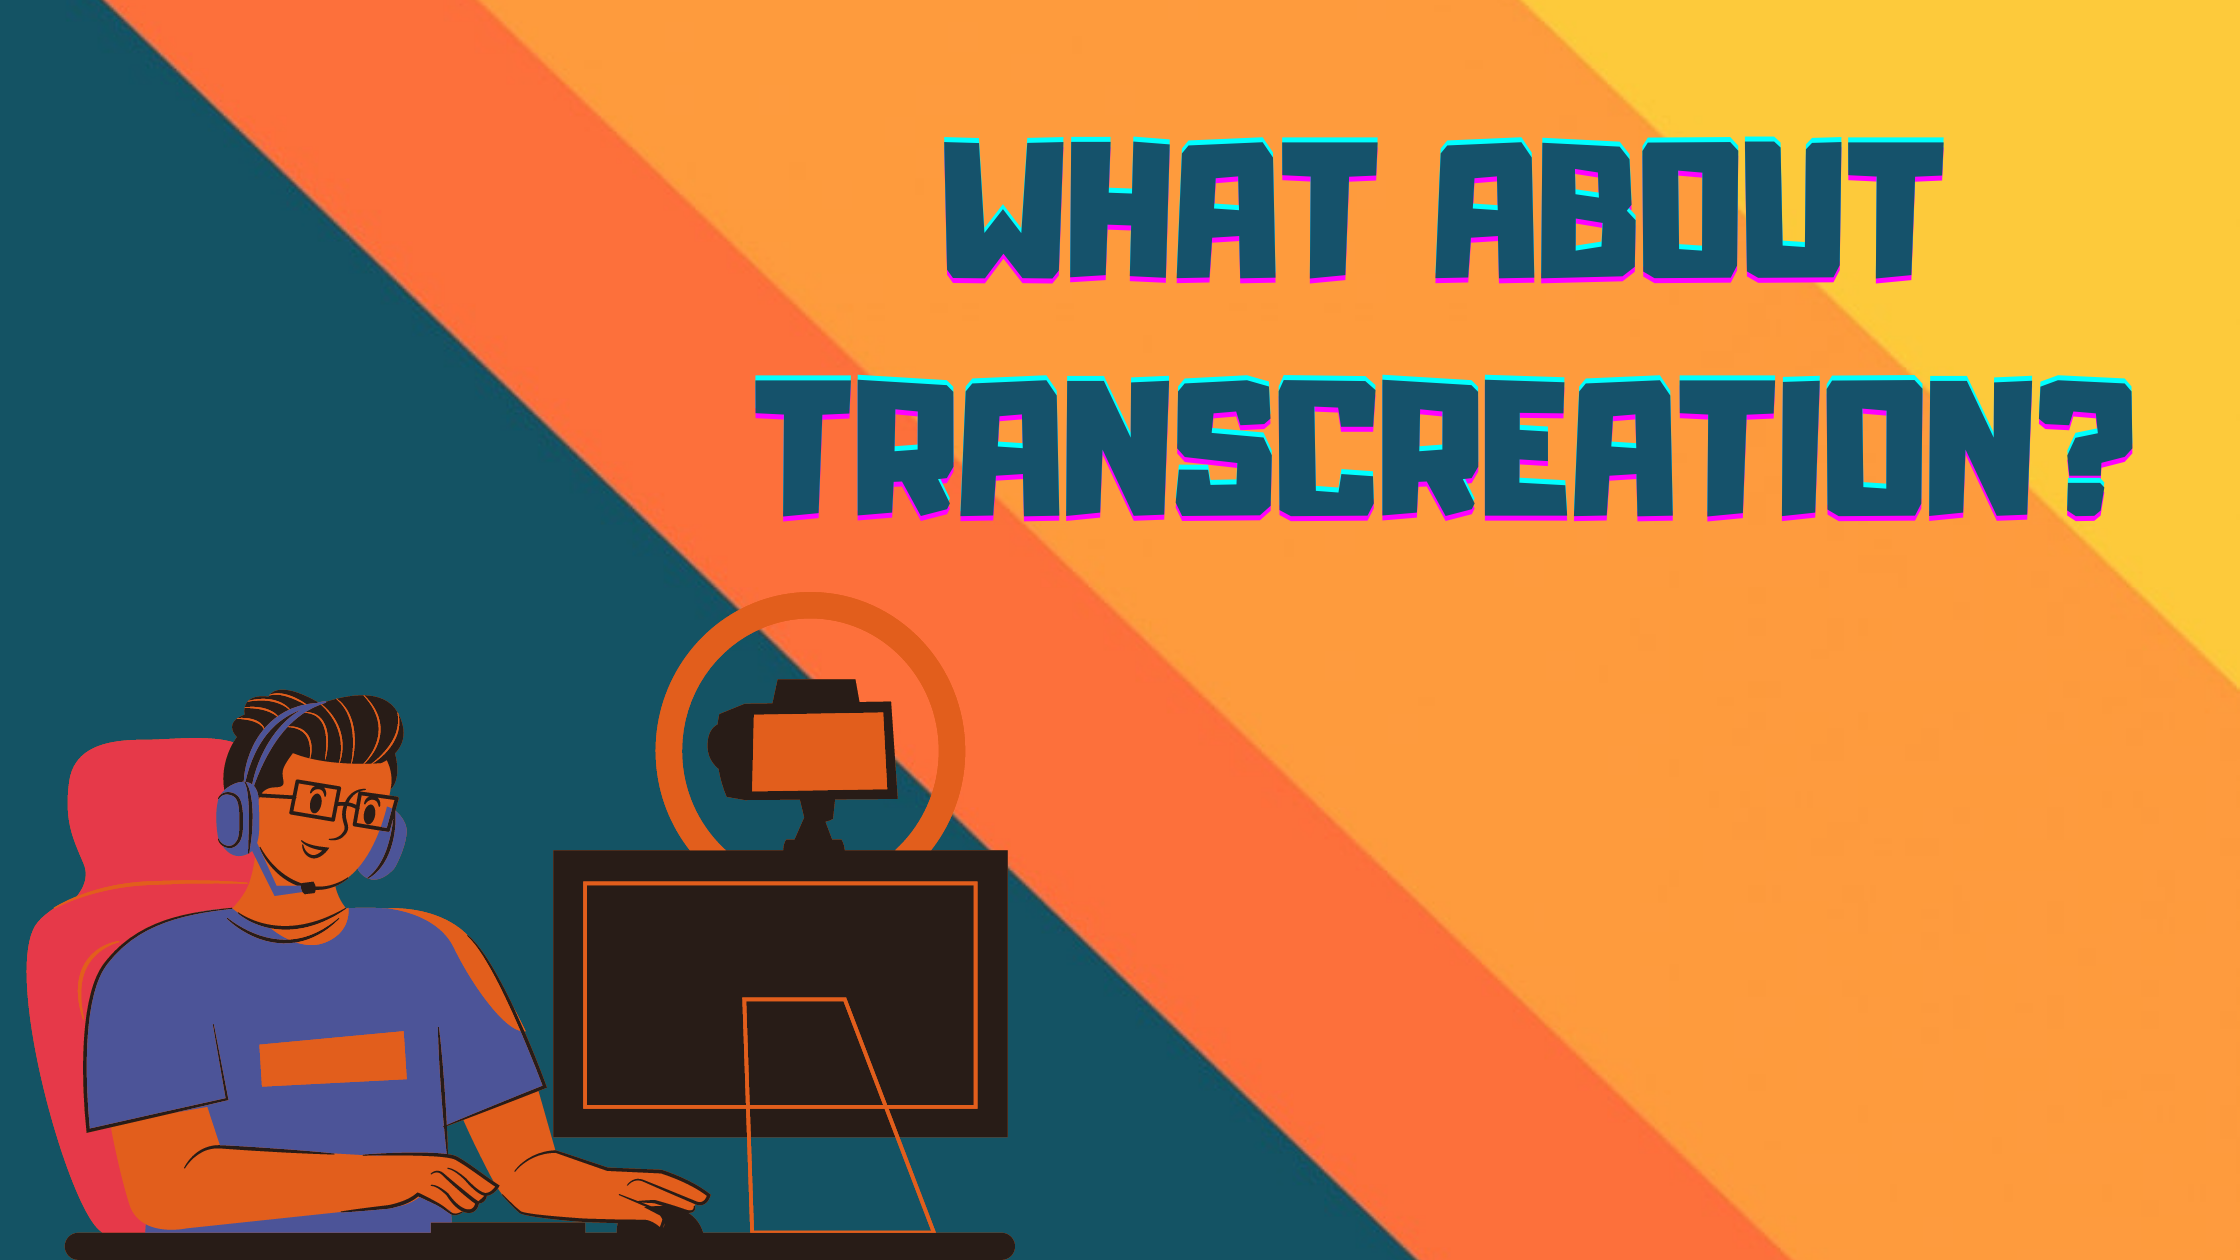 La Transcreation nel processo di traduzione videoludica